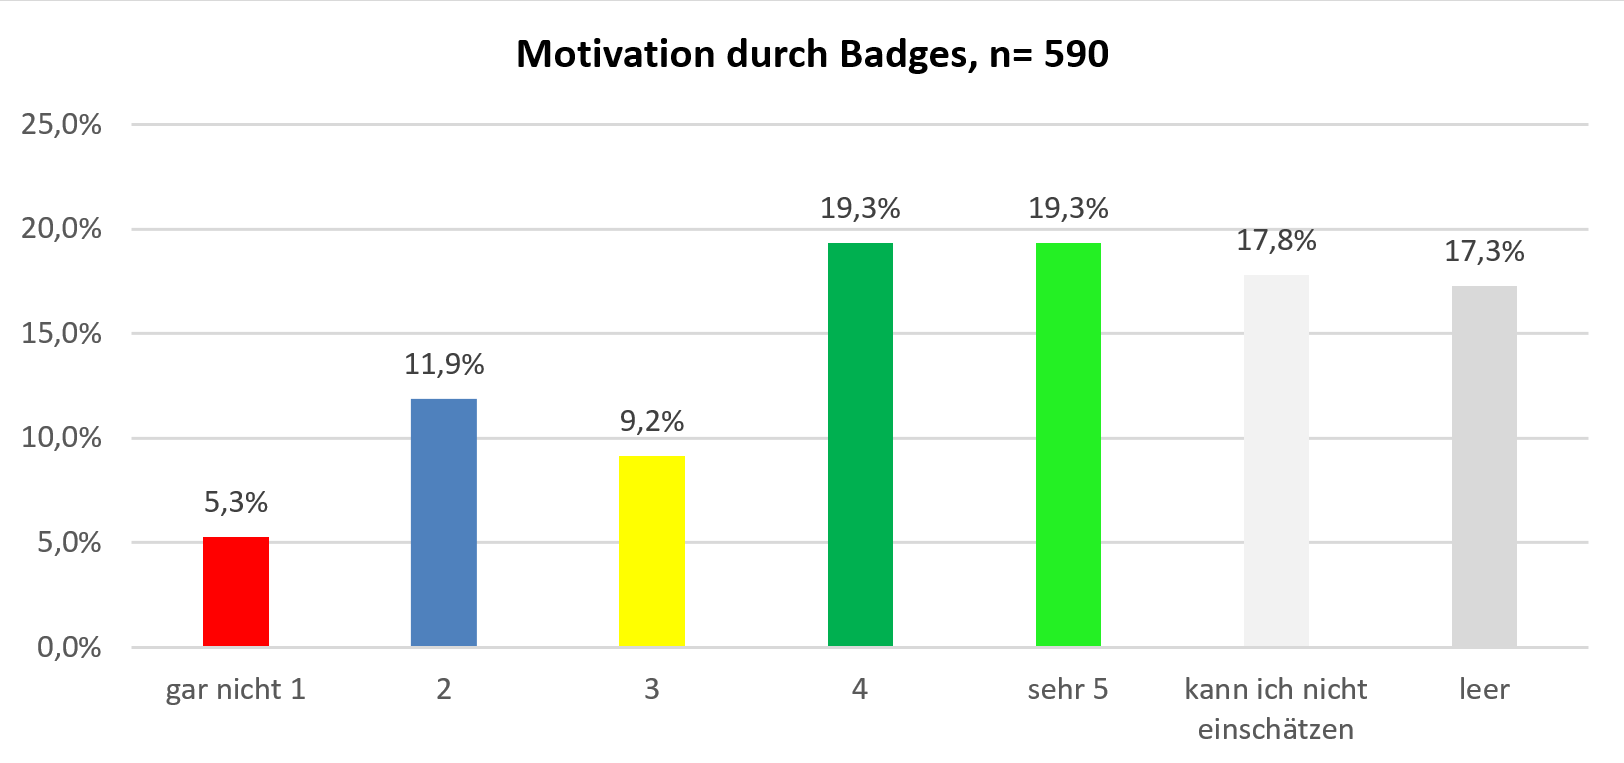 PMOOCs2-14-motivationBadges.png